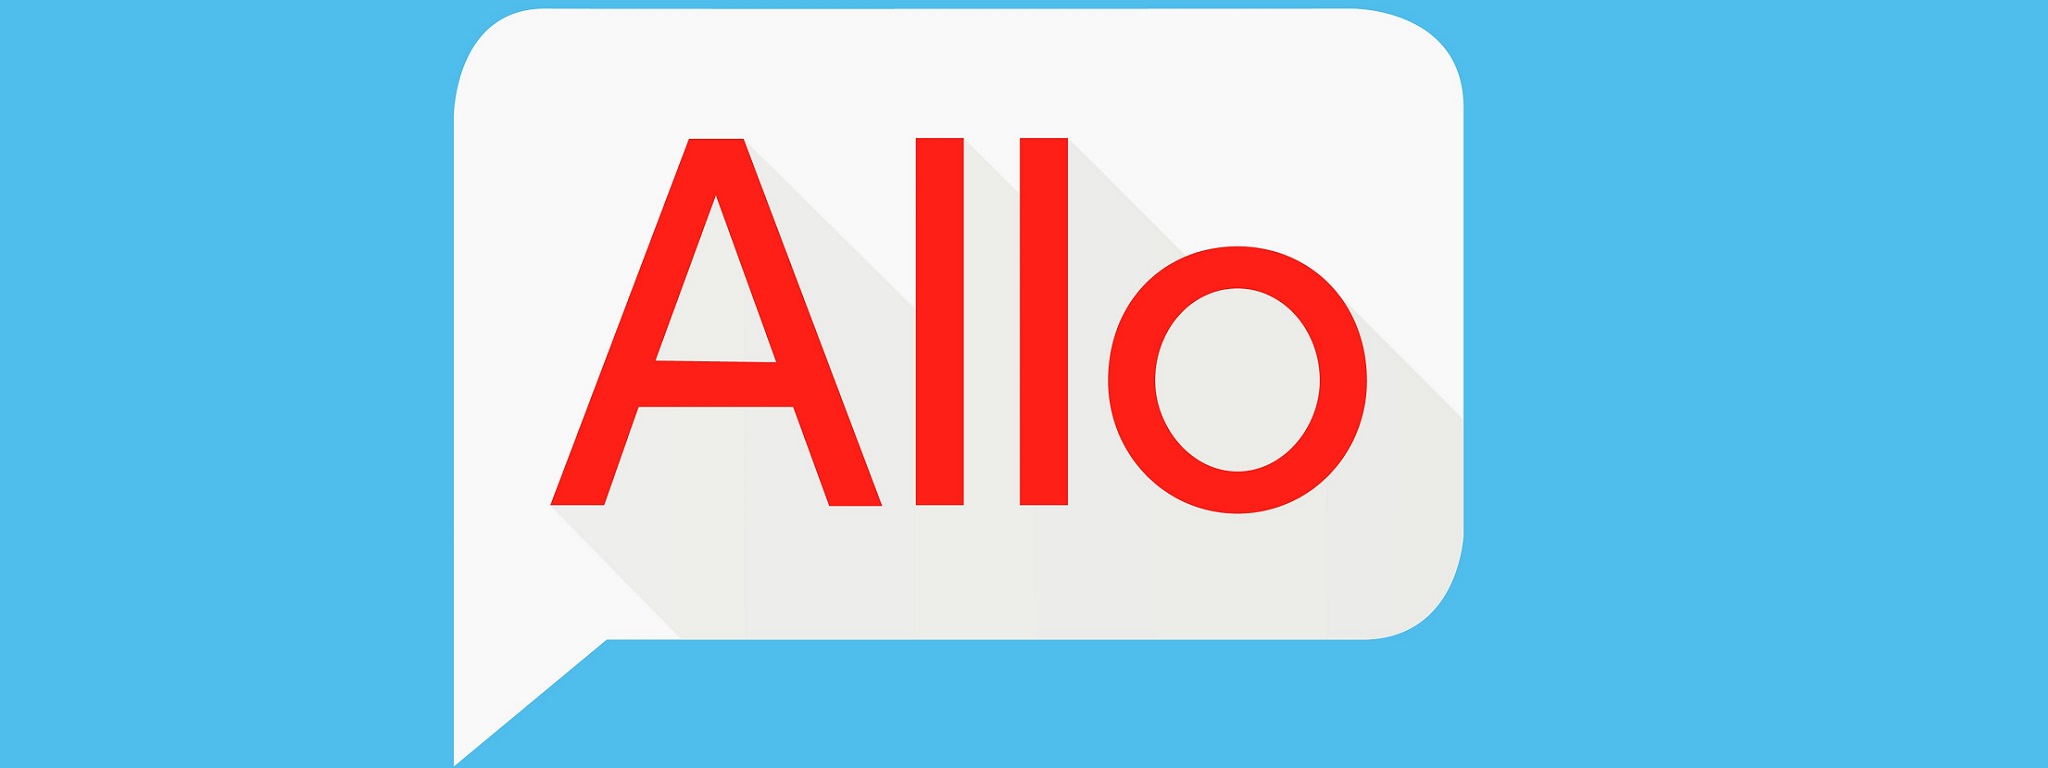 Google thêm tính năng cho Allo: gởi hình GIF, emoji động và 1 chạm để mở Assistant